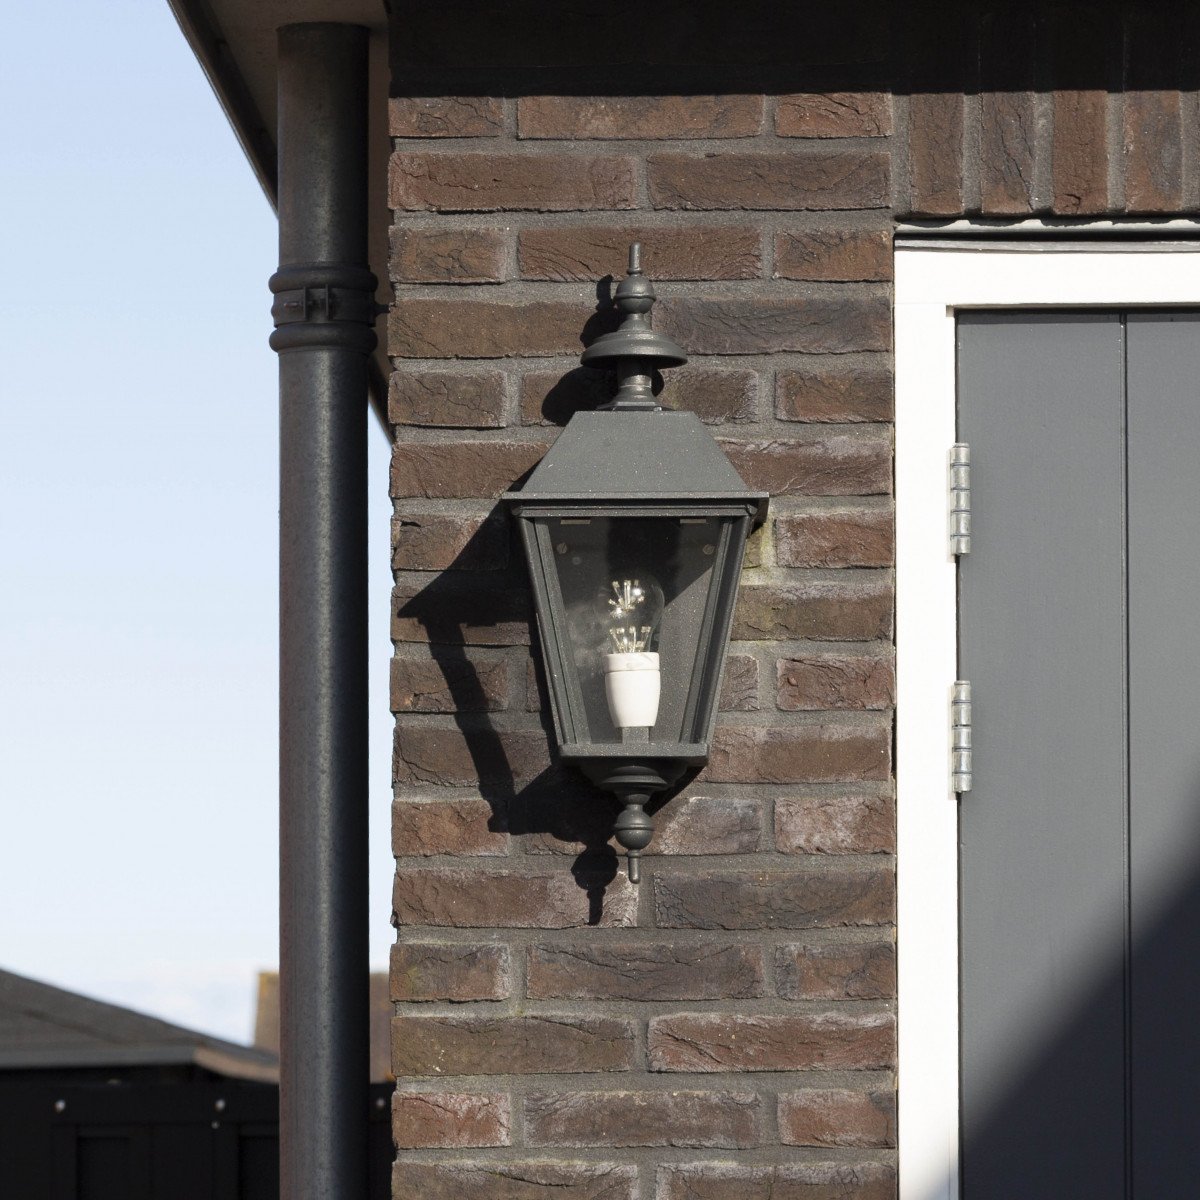 Lampe d'extérieur, montante, Delft M Verte de KS Lighting